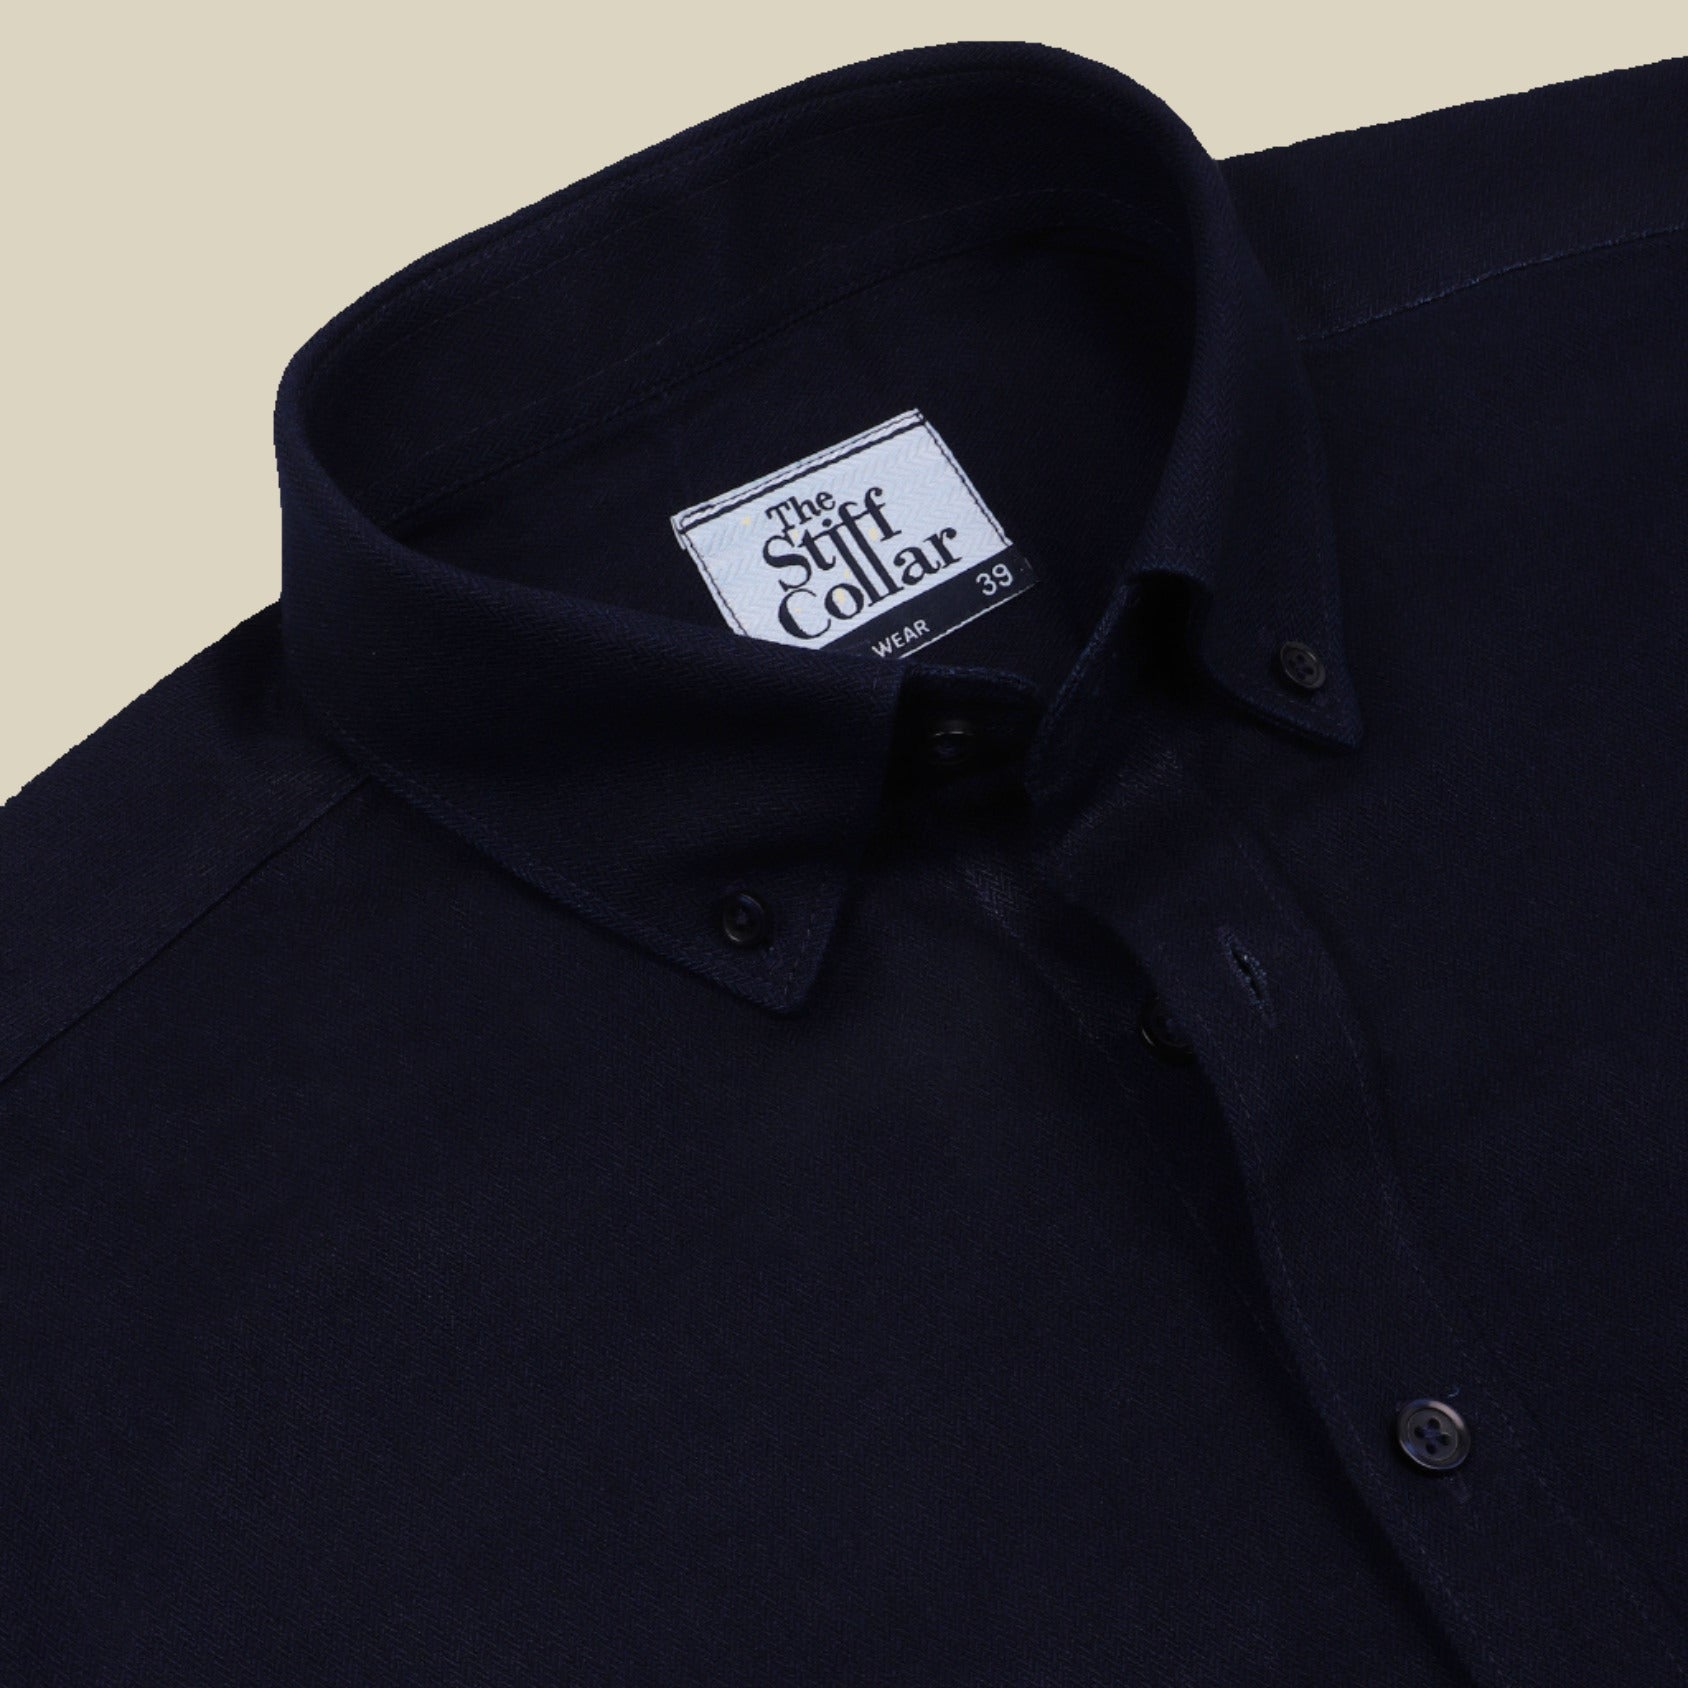 stiffcollar Ironed blue denim shirt for men - open collar button down shirt for men